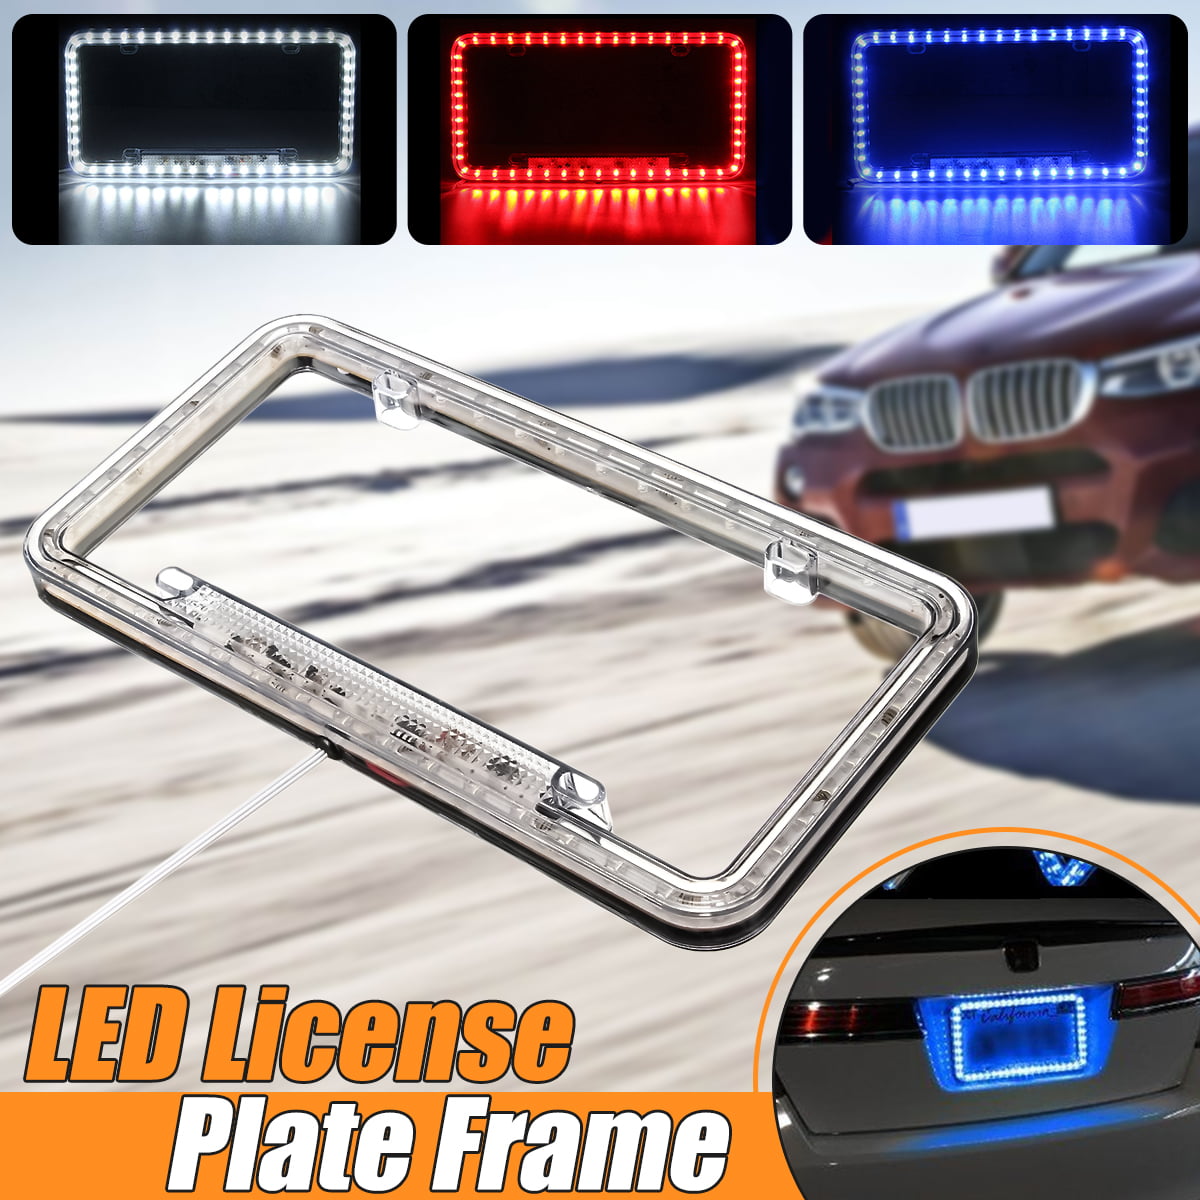 led license plate light frame